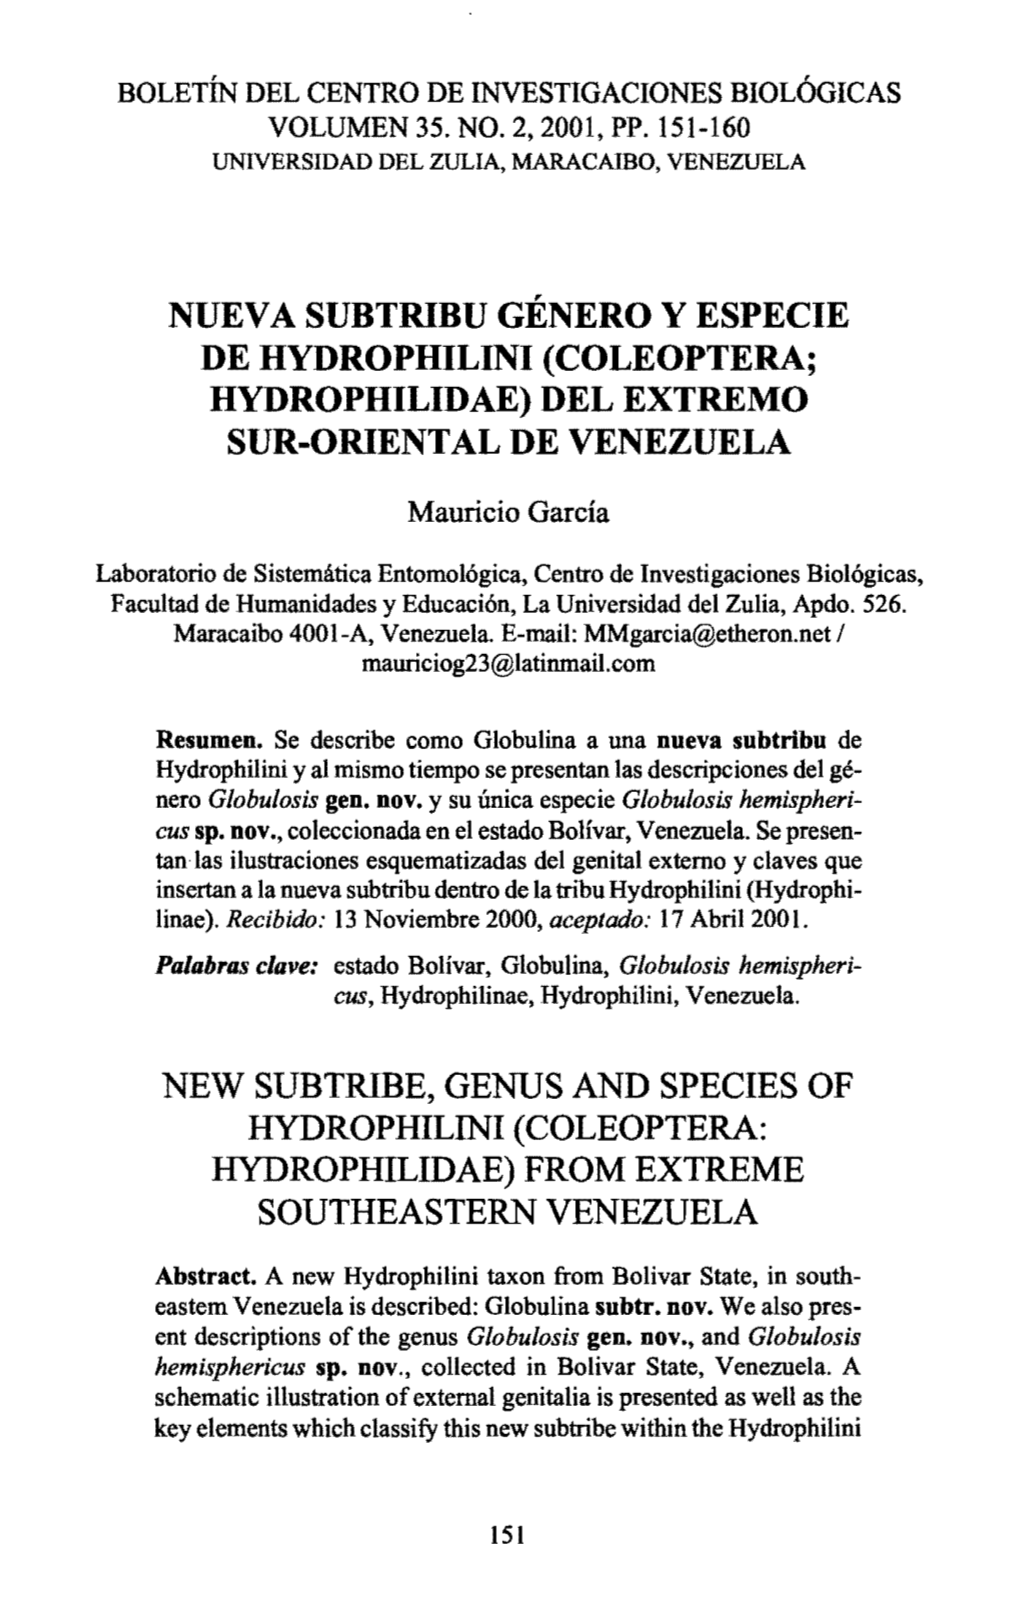 NUEVA SUB TRIBU GÉNERO Y ESPECIE DE HYDROPHILINI (COLEOPTERA; HYDROPHILIDAE) DEL EXTREMO SUR-ORIENTAL DE VENEZUELA